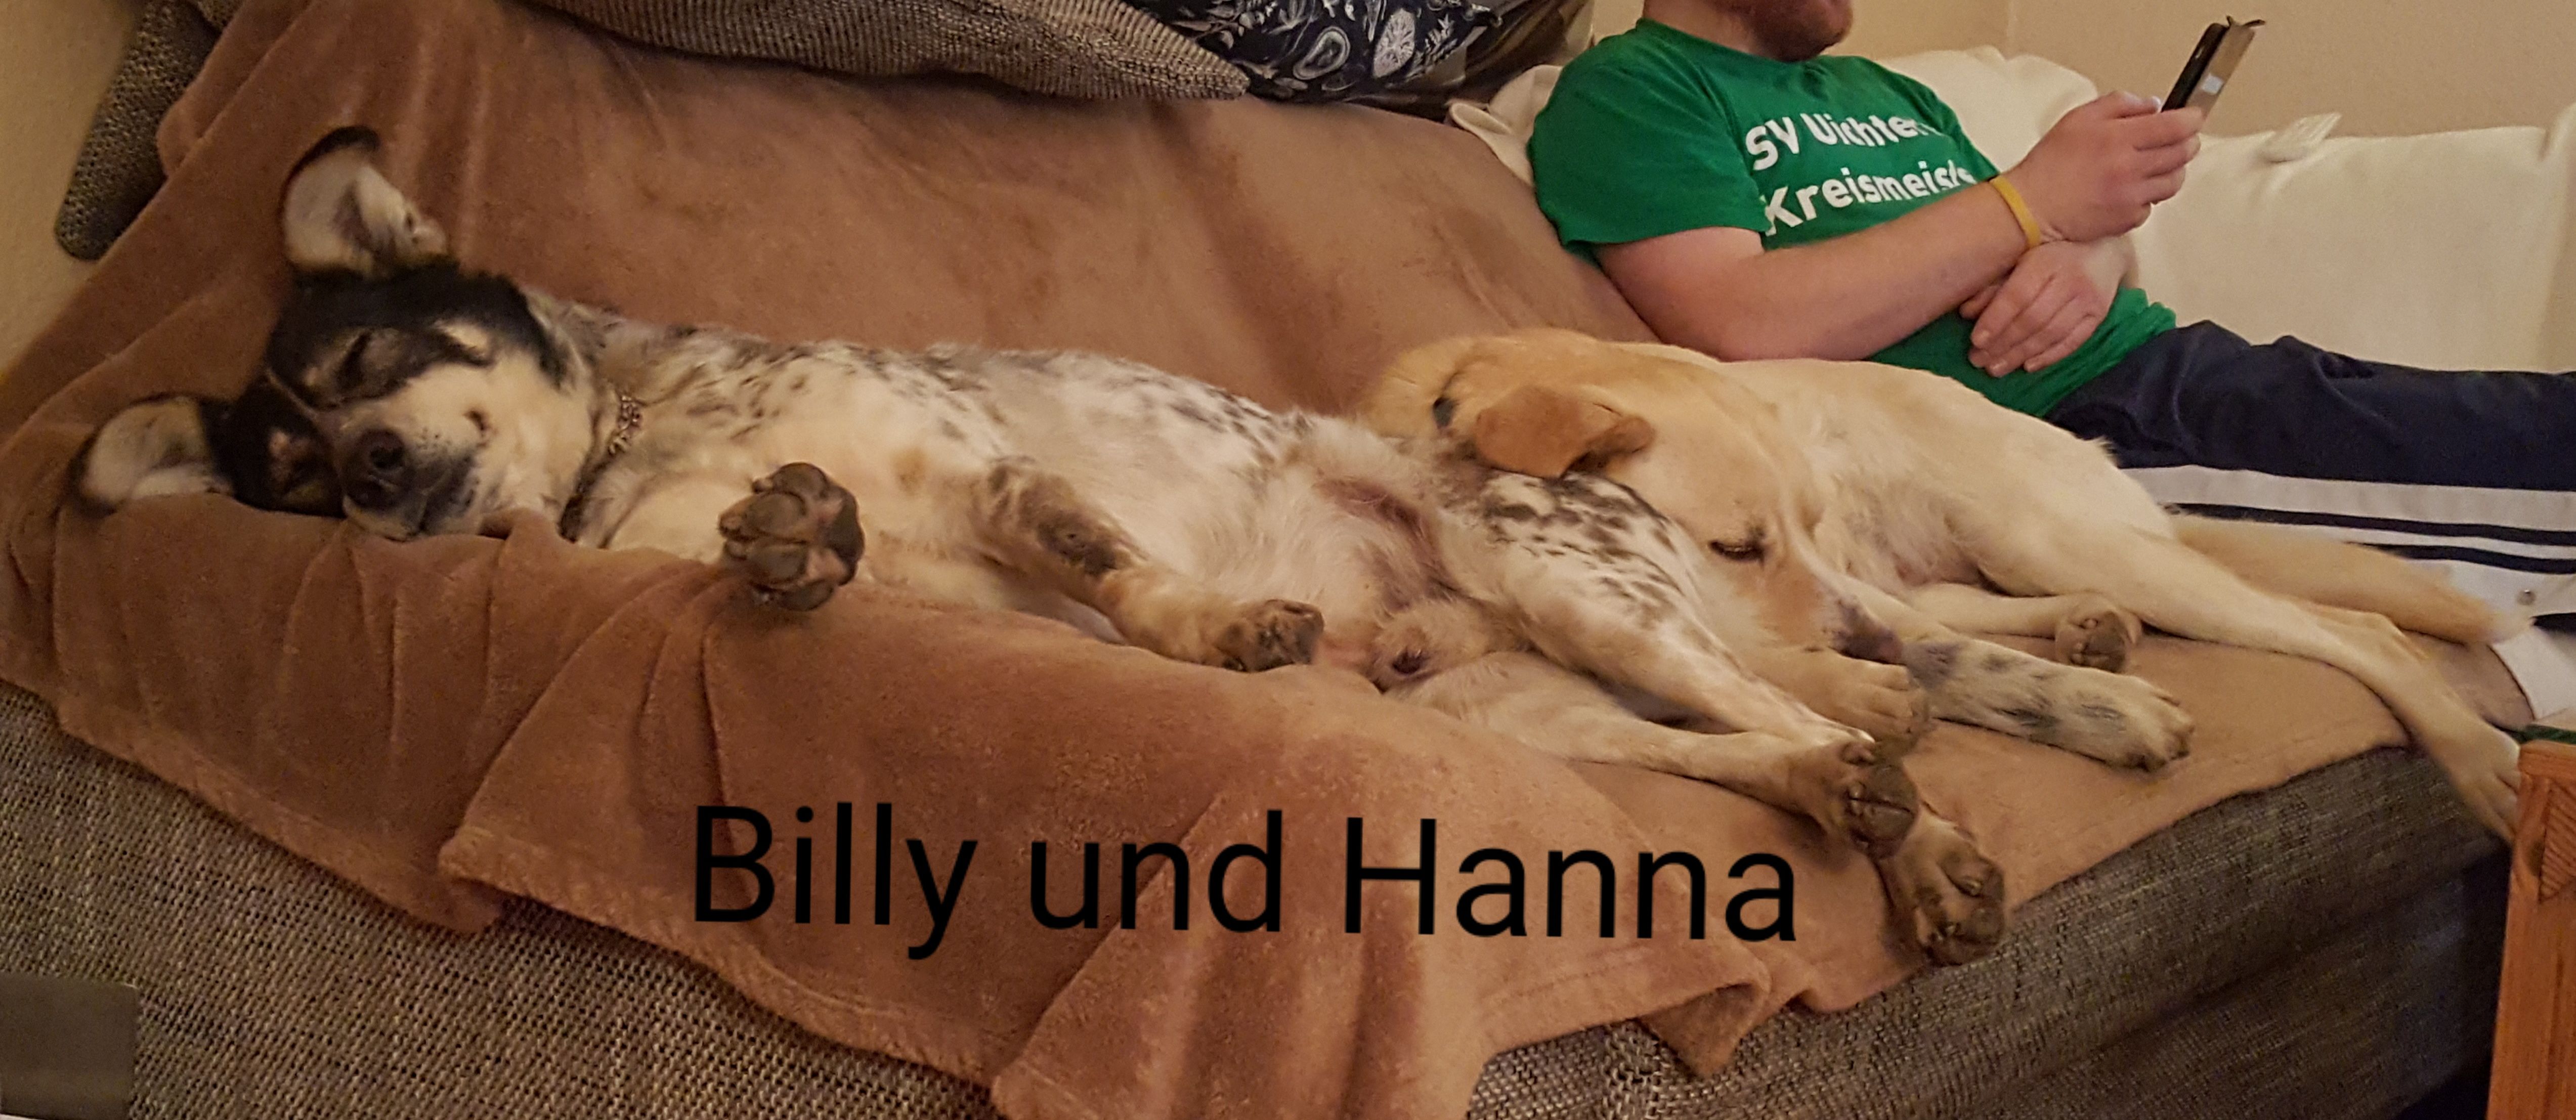 Billy und Hanna